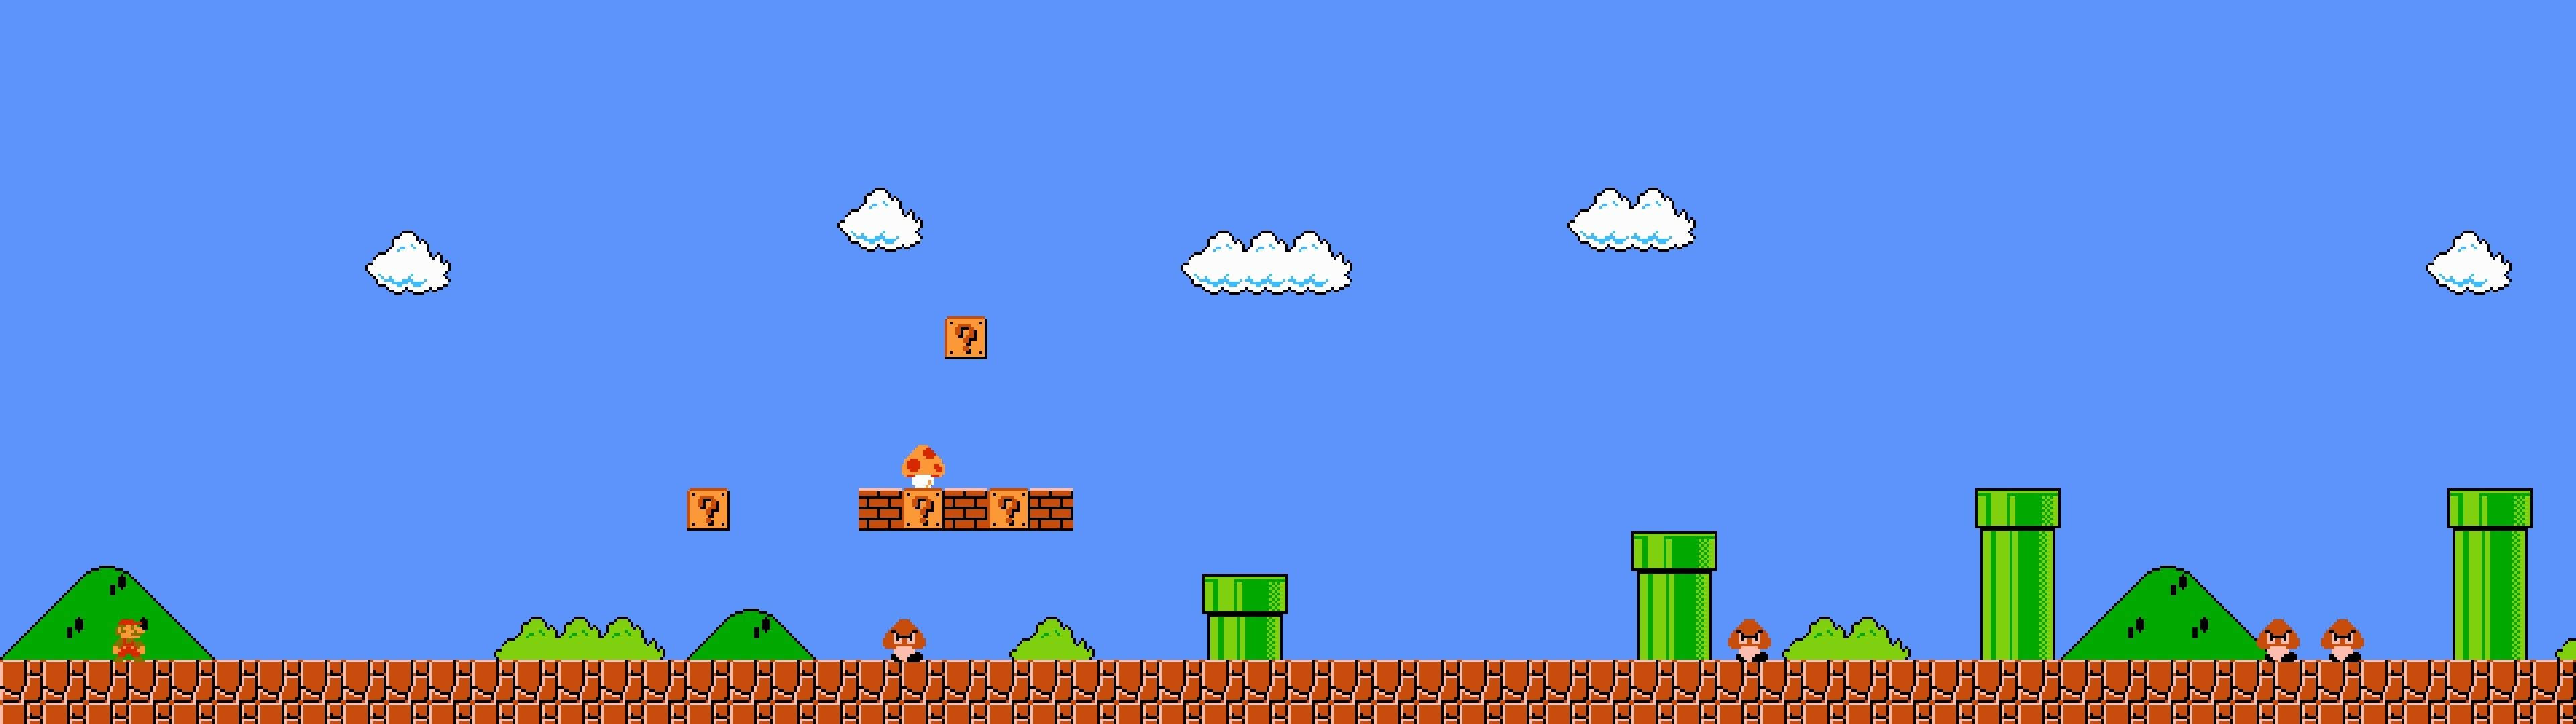 Et Mario Bros-spil med meget vand, der falder. Wallpaper